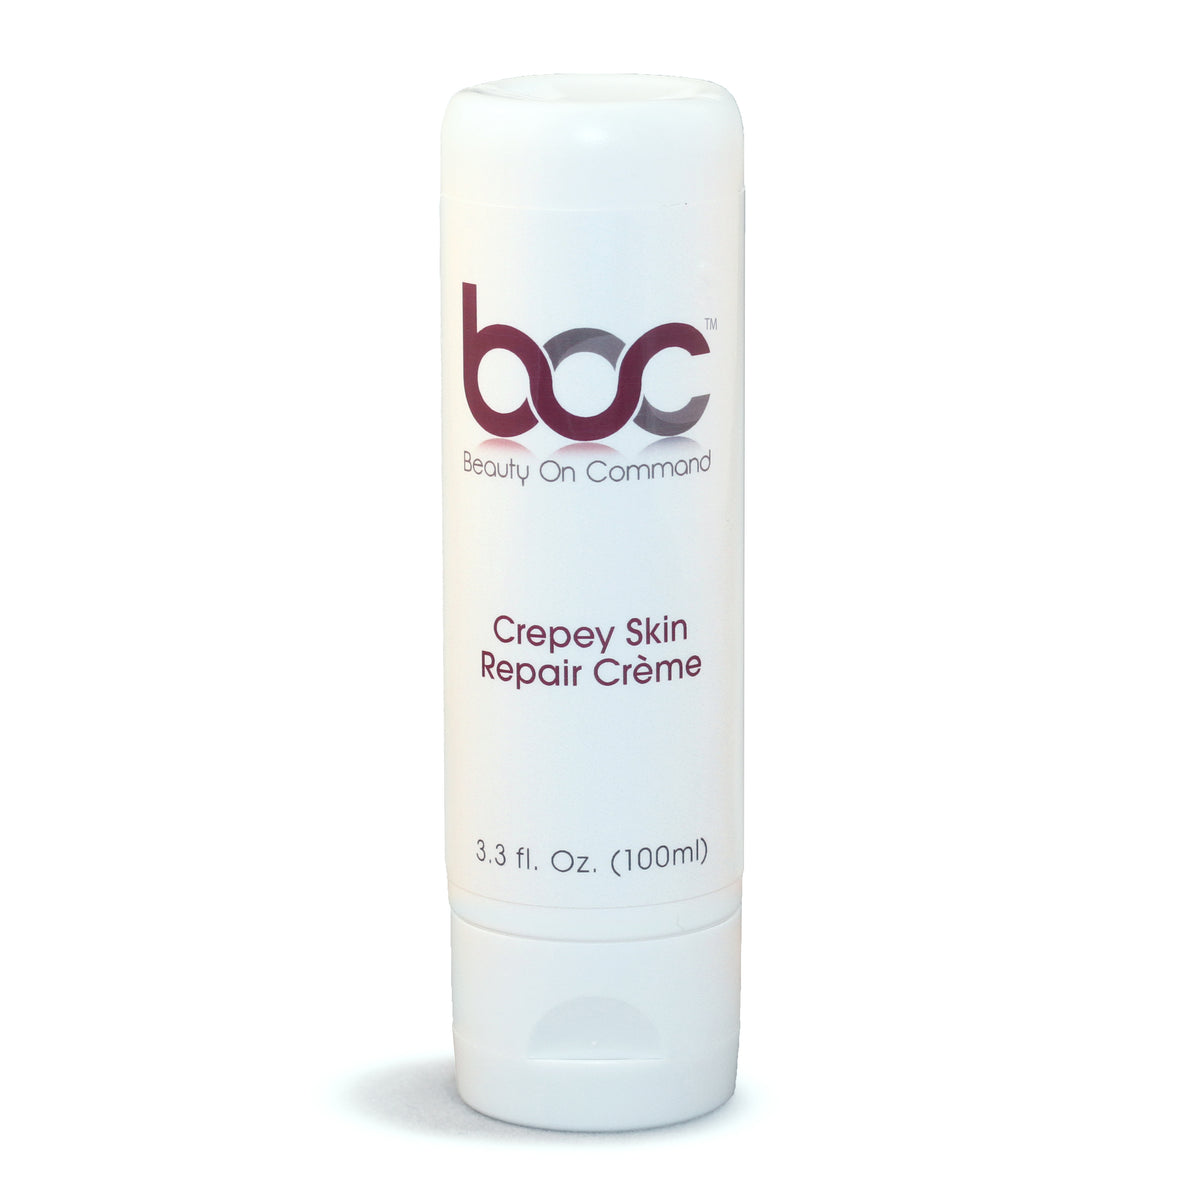 Crepey Skin Repair Creme - BeautyOnCommand